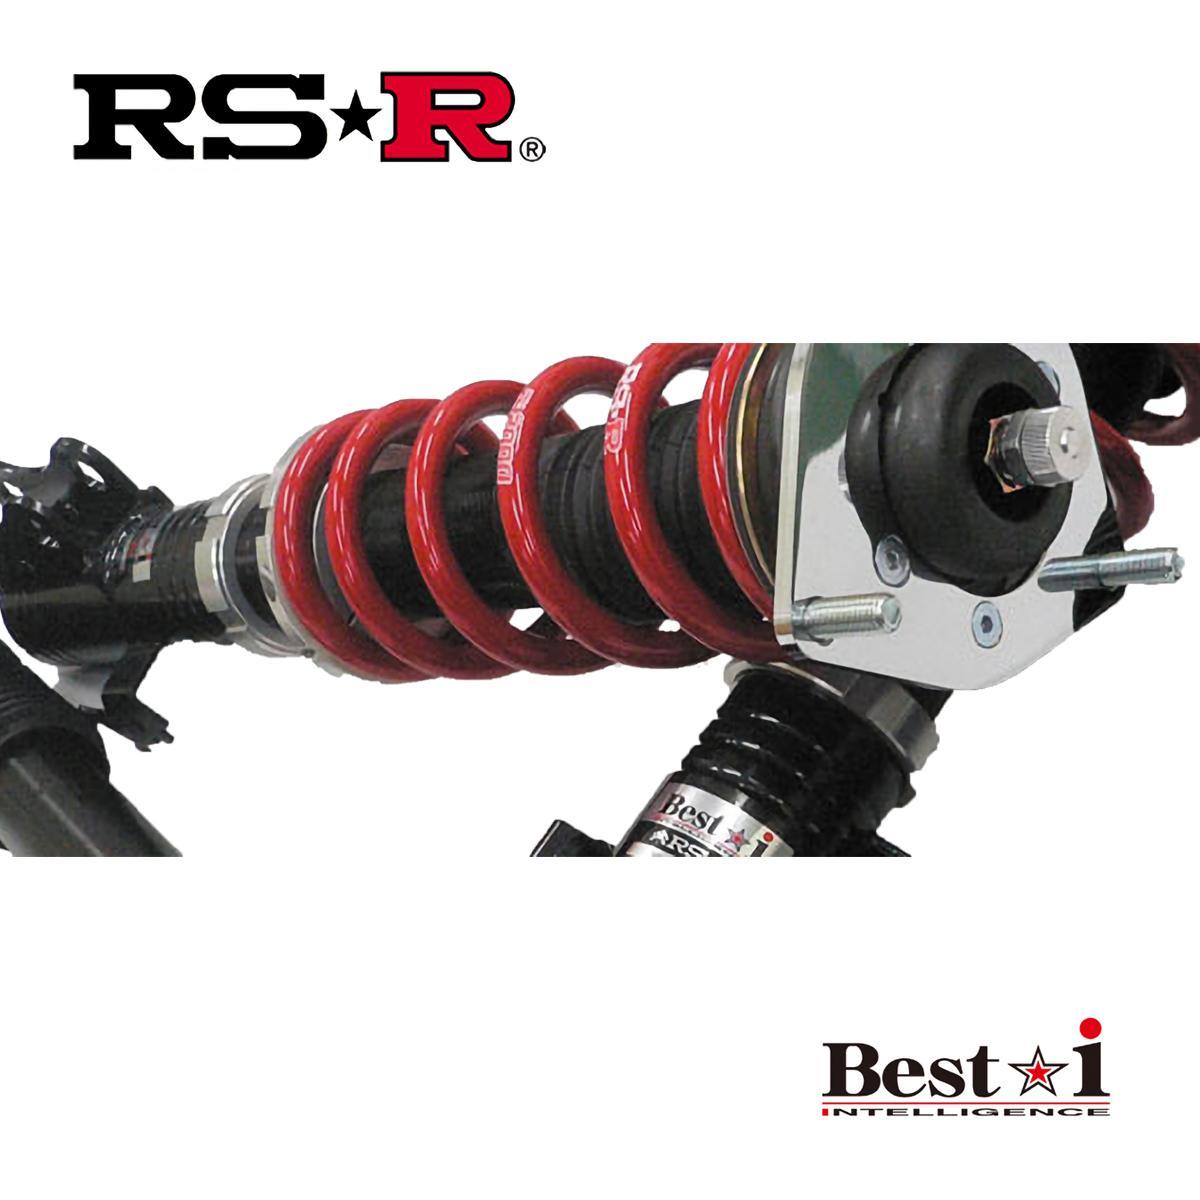 RSR ヴェルファイア AGH30W 車高調 リア車高調整:ネジ式 BIT940M RS-R Best-i ベストi_画像1